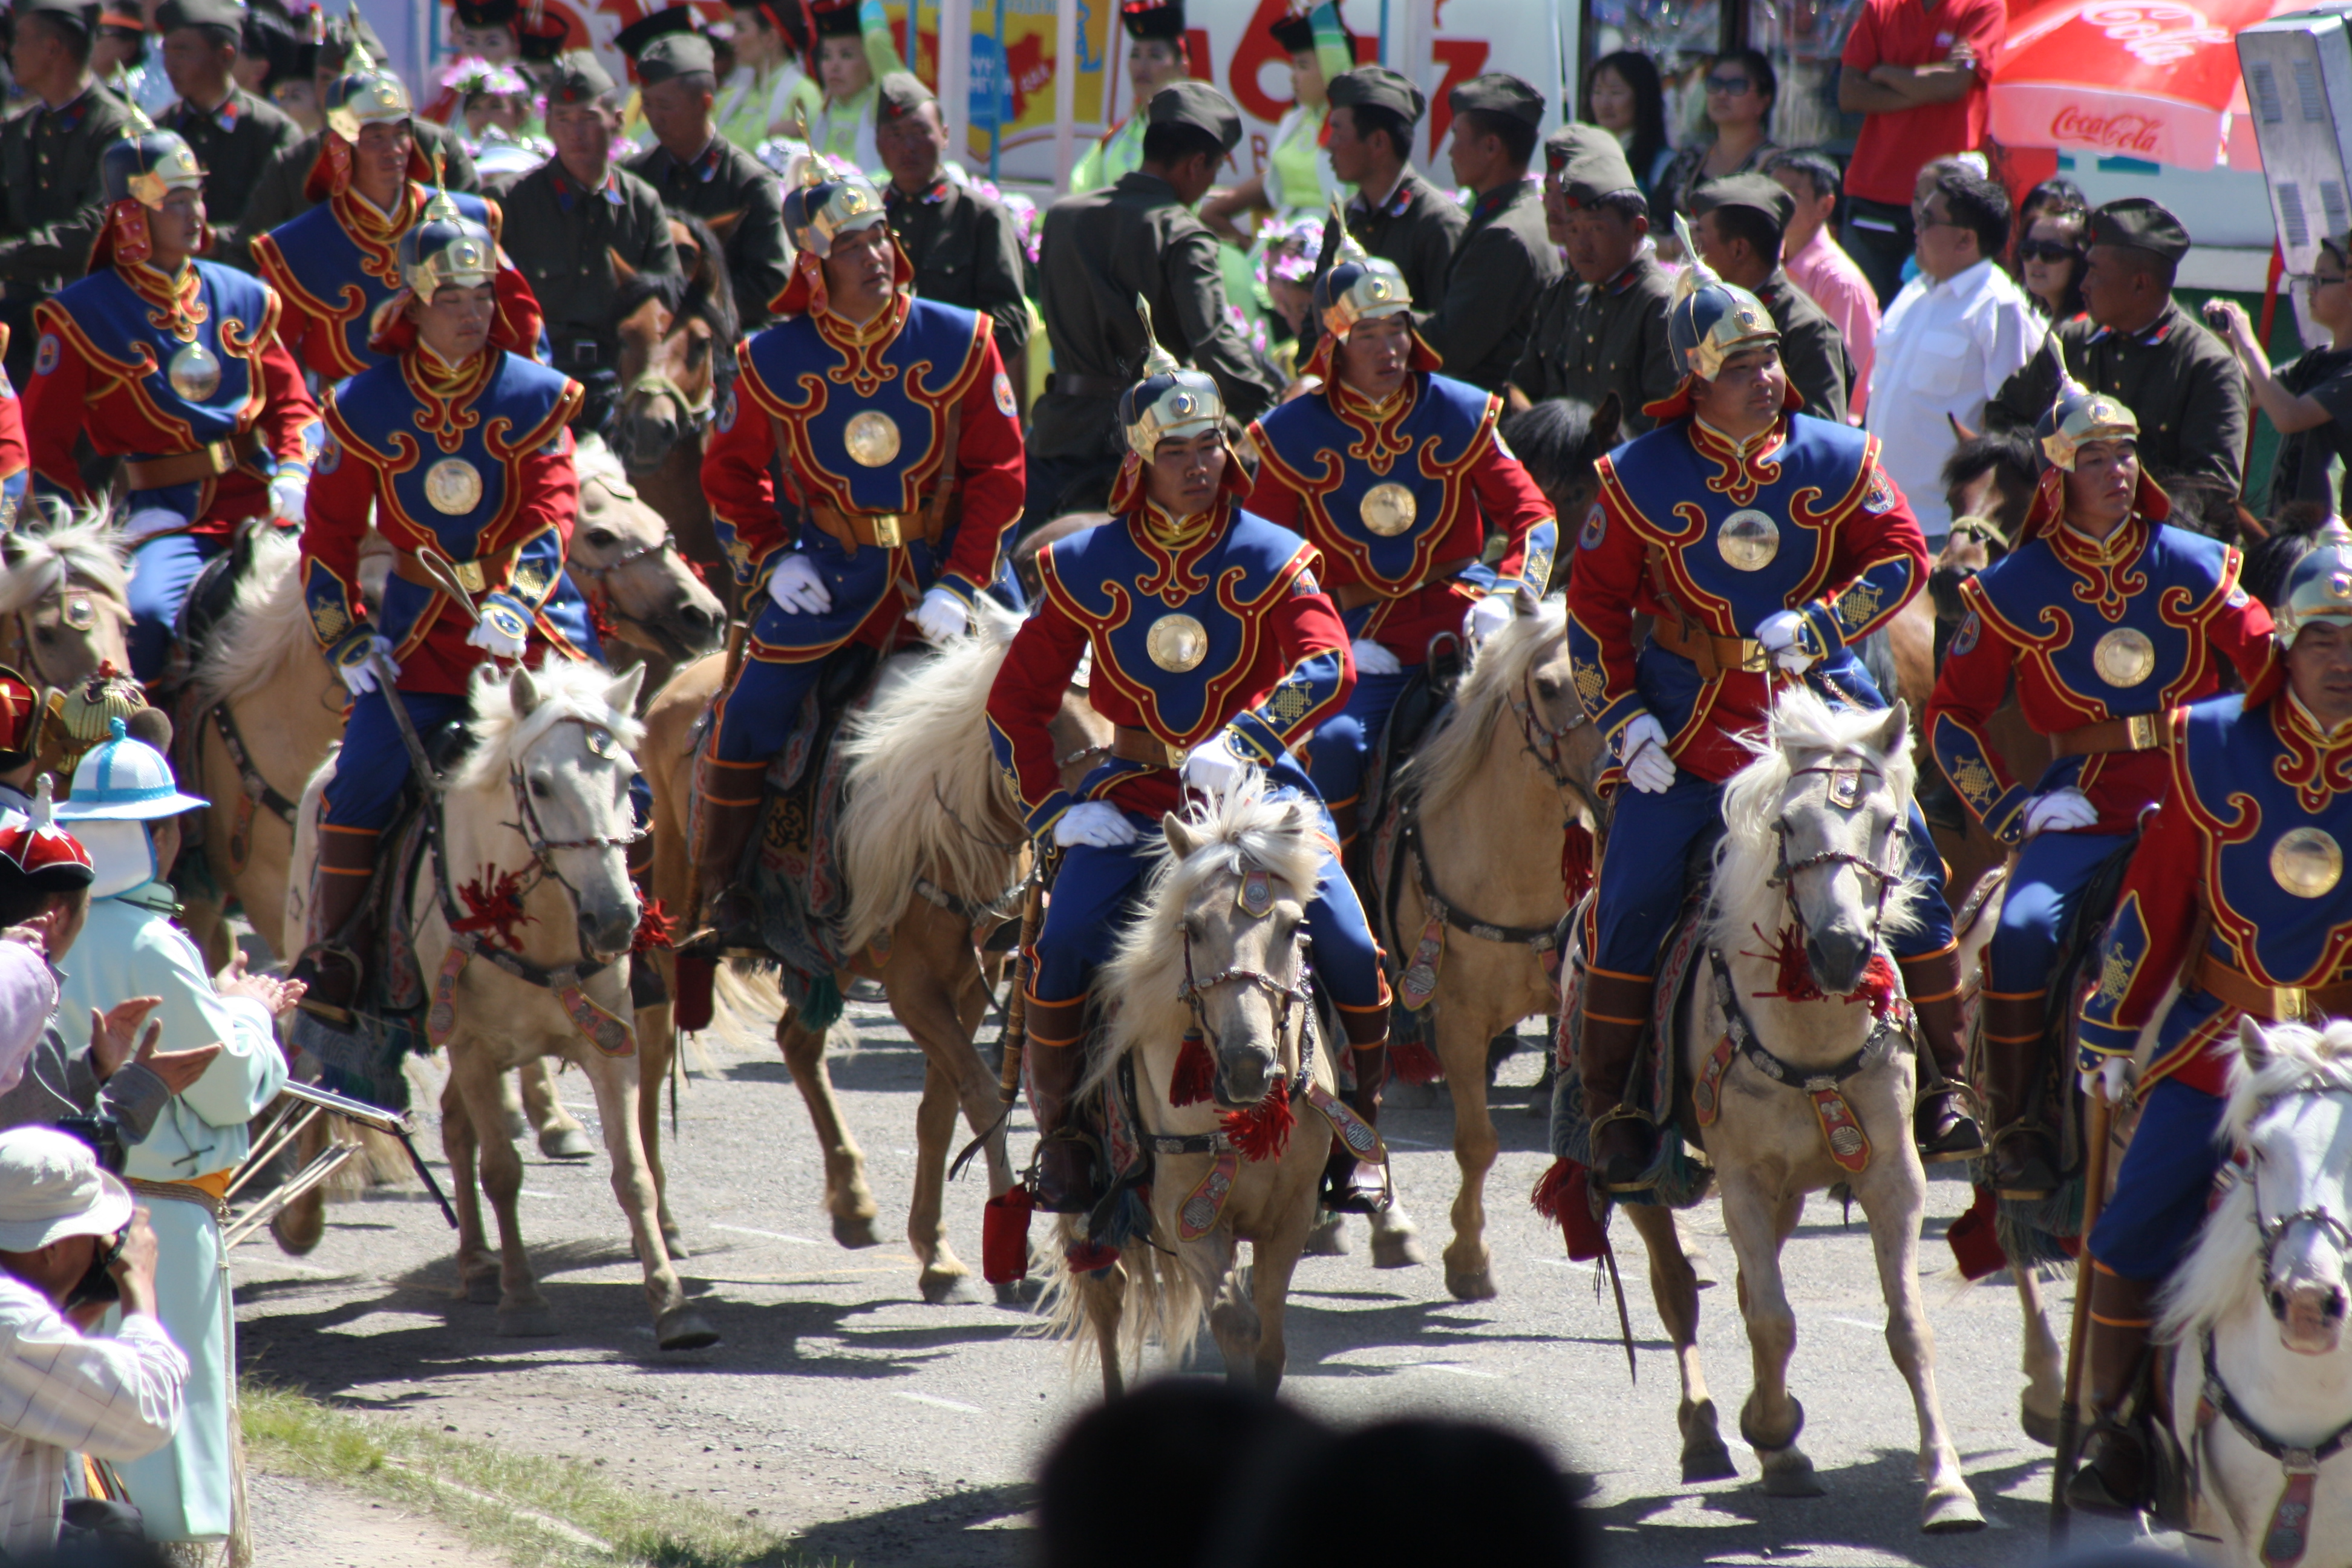 Foto: Viajes de Aventuras, Culturales y Expediciones a Lejano Oriente Mongolia con Samar Magic Tours en Español - Mongolia (Ulaanbaatar), Mongolia